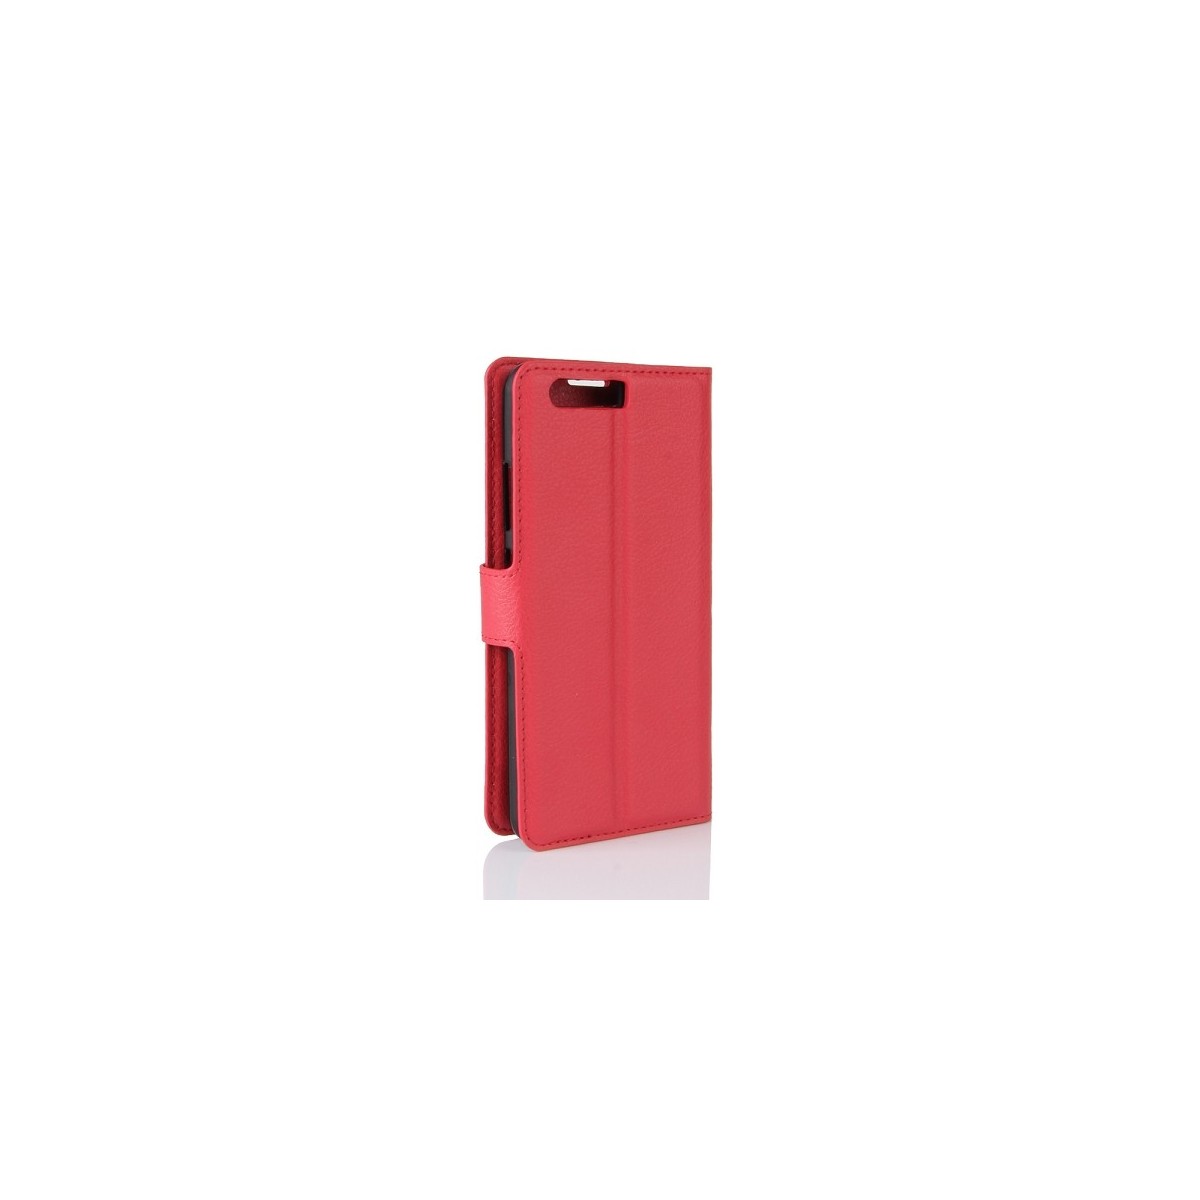 Etui Huawei P10 grainé rouge - Crazy Kase